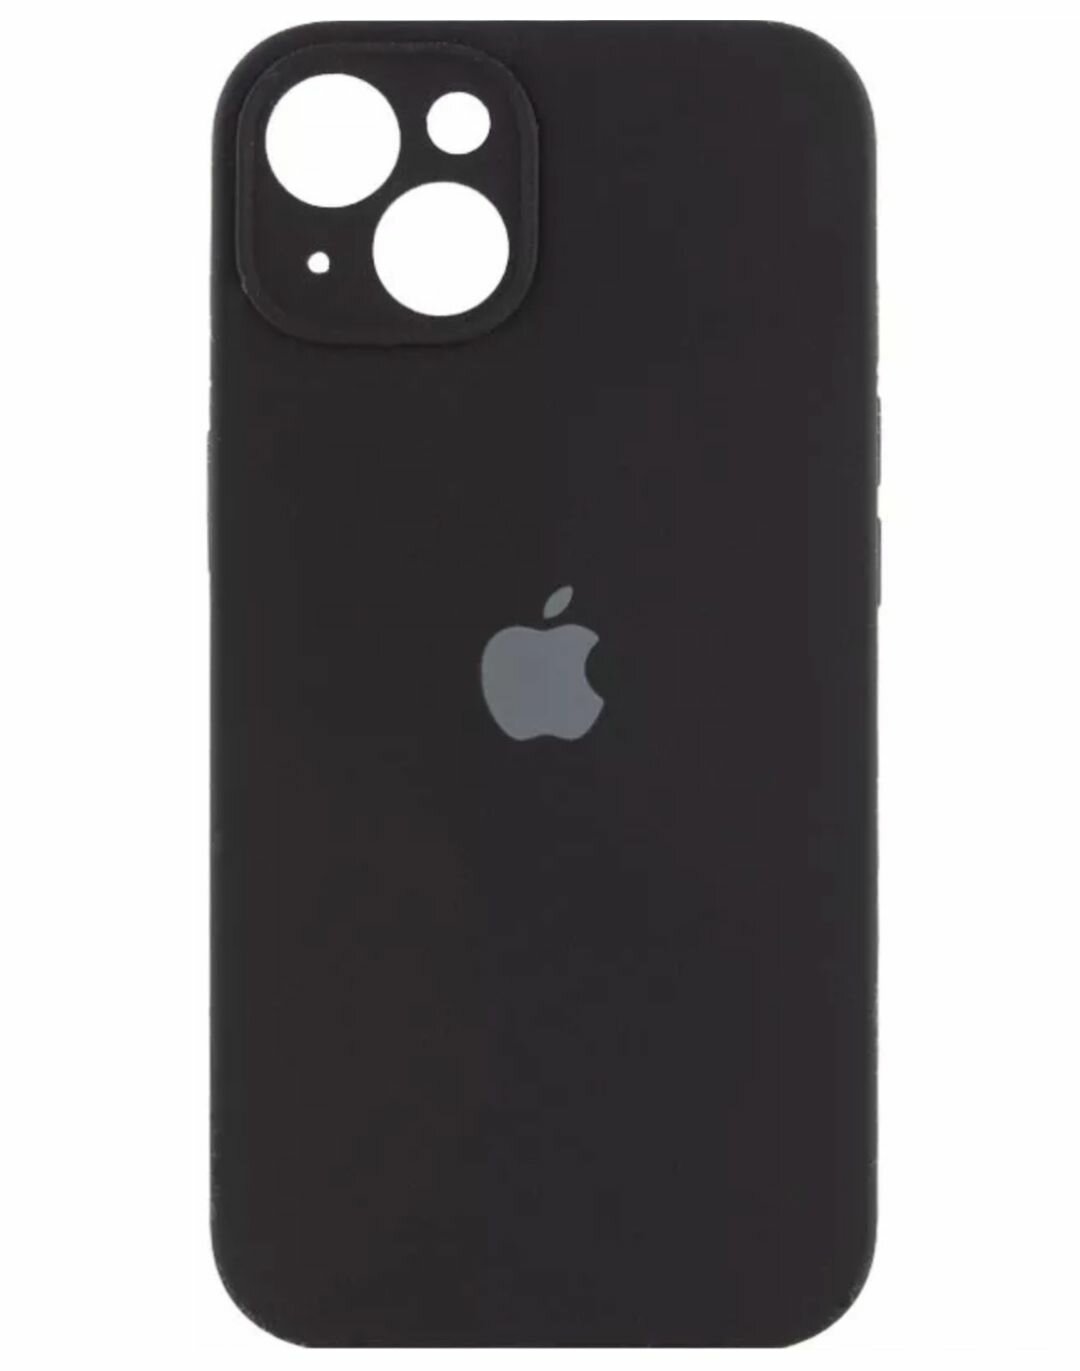 Чехол на айфон 13 под оригинальный чёрный , iphone 13 замша, утолщённый противоударный Silicone case